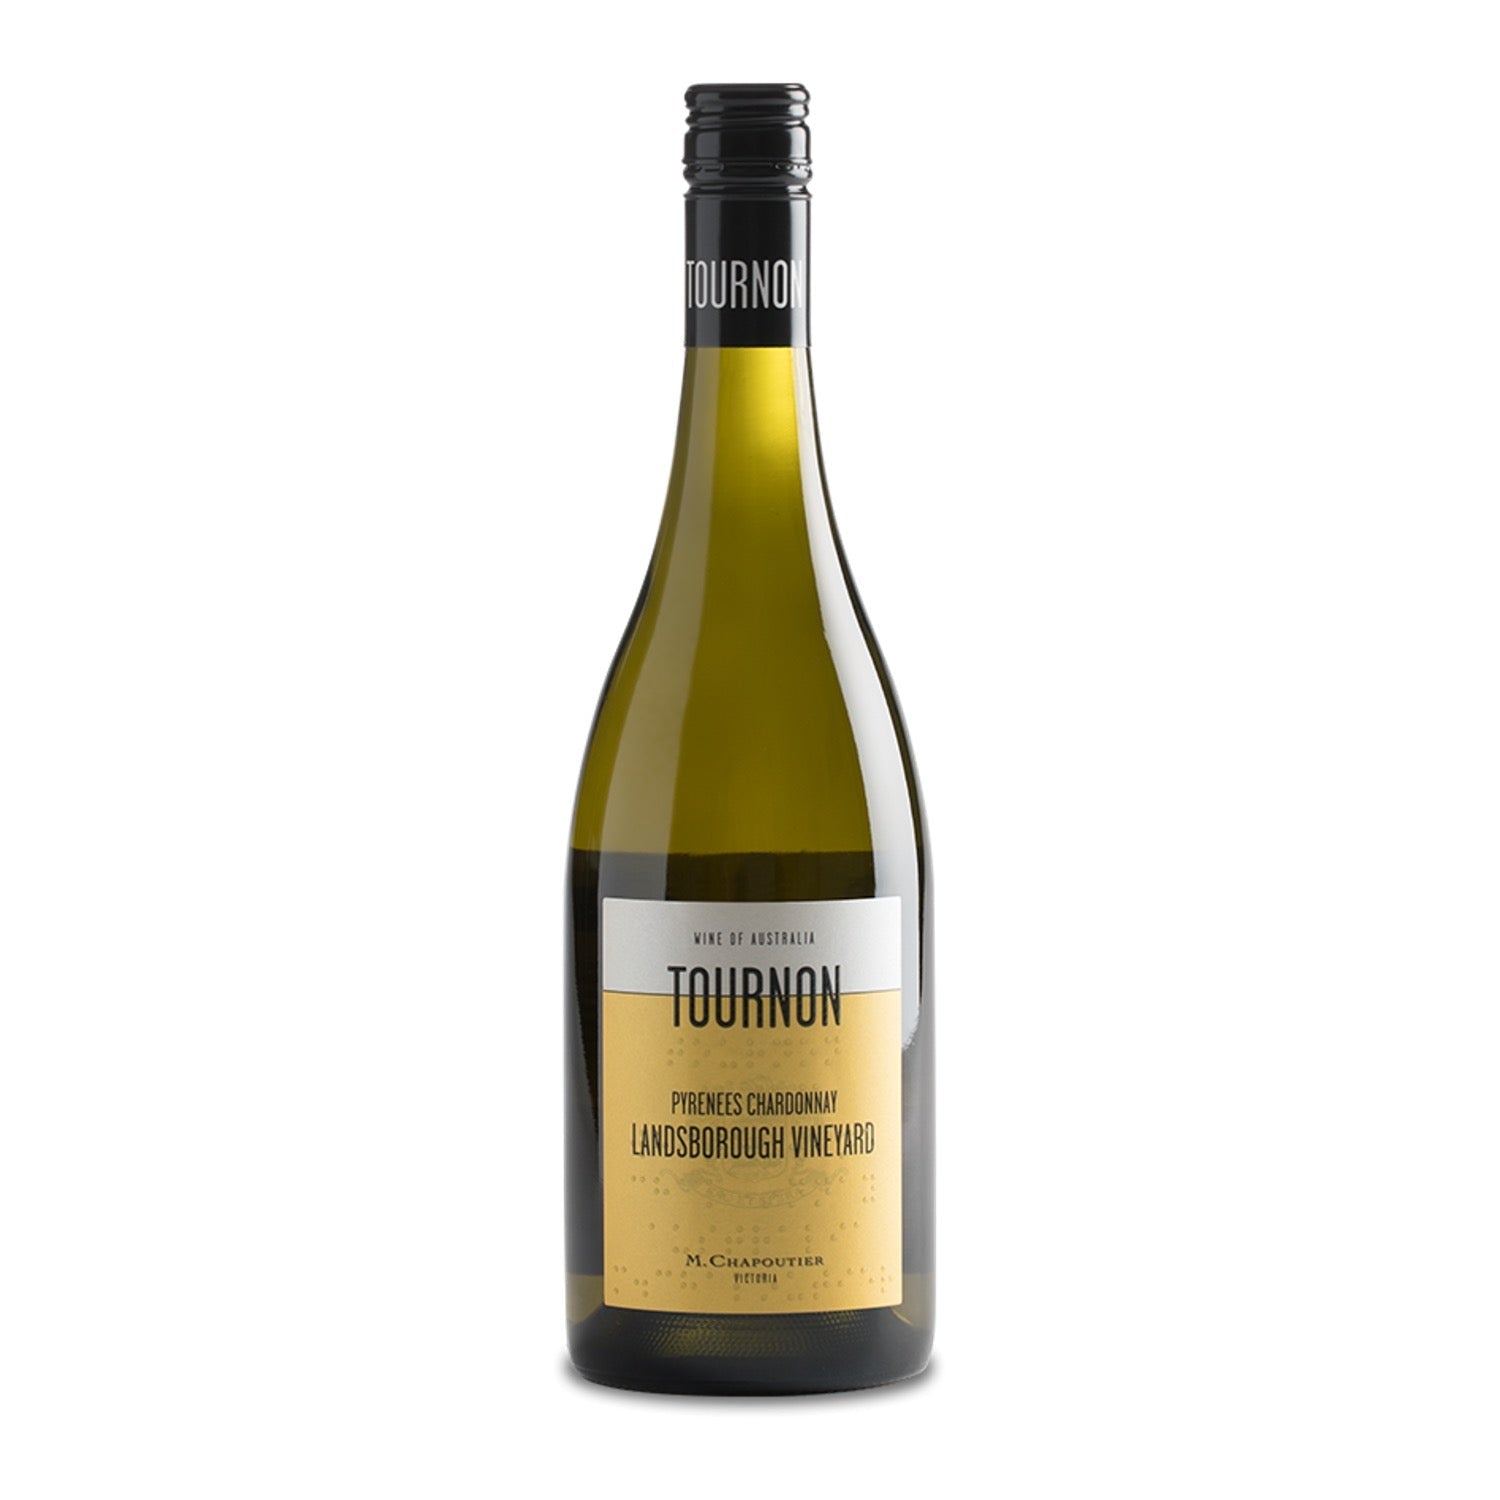 Domaine TOURNON & M. CHAPOUTIER Pyrenees Chardonnay "Landsborough" 2019